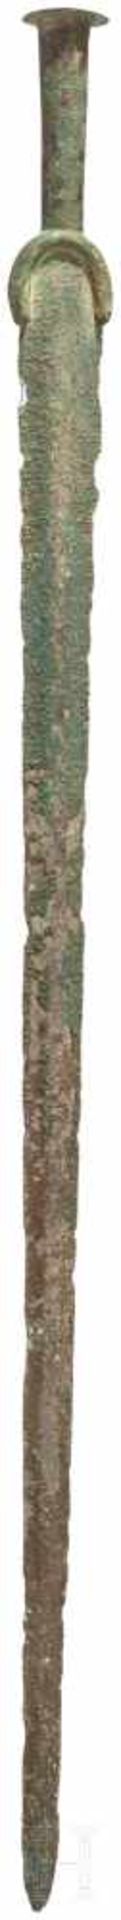 Außergewöhnlich langes Vollgriffschwert, Luristan, 11. Jhdt. v. Chr.Bronzeschwert mit sehr langer, - Bild 2 aus 2